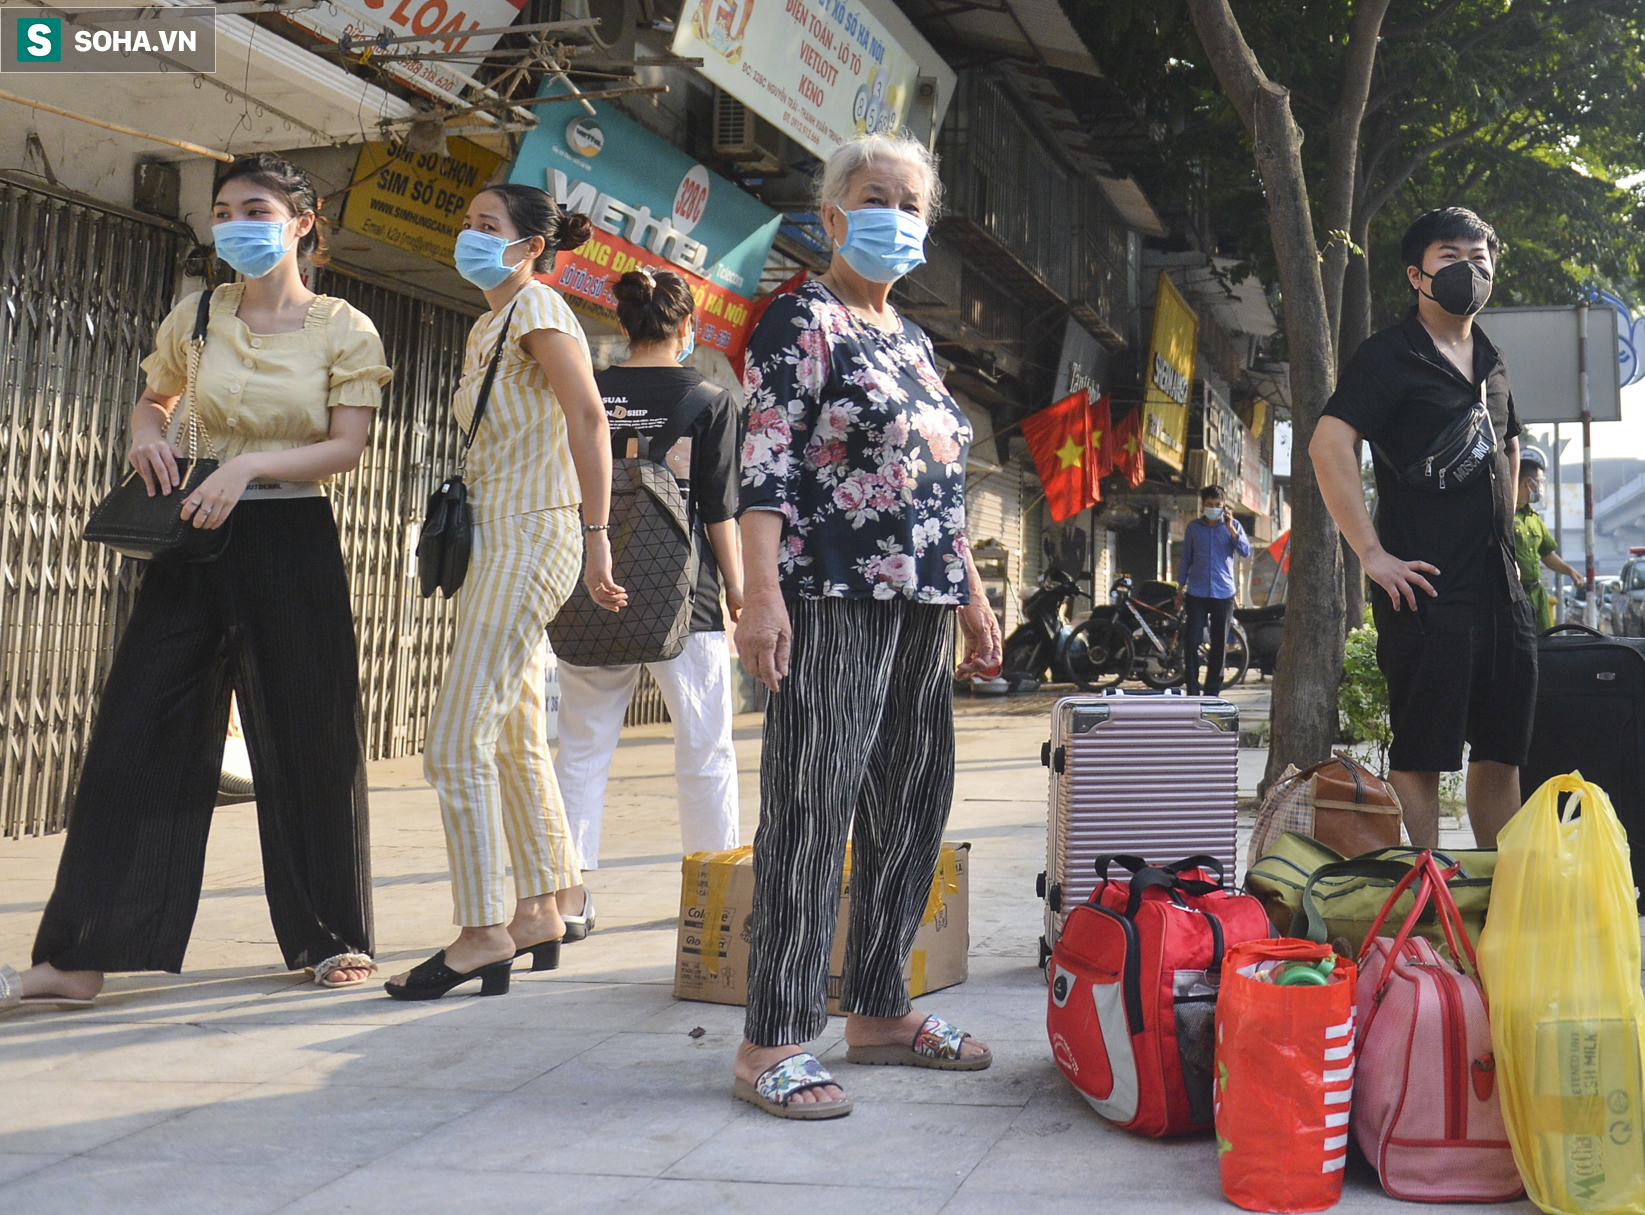 Hơn 1000 người dân tại ổ dịch có gần 600 ca mắc Covid-19 ở Hà Nội về nhà sau gần 1 tháng đi cách ly - Ảnh 4.